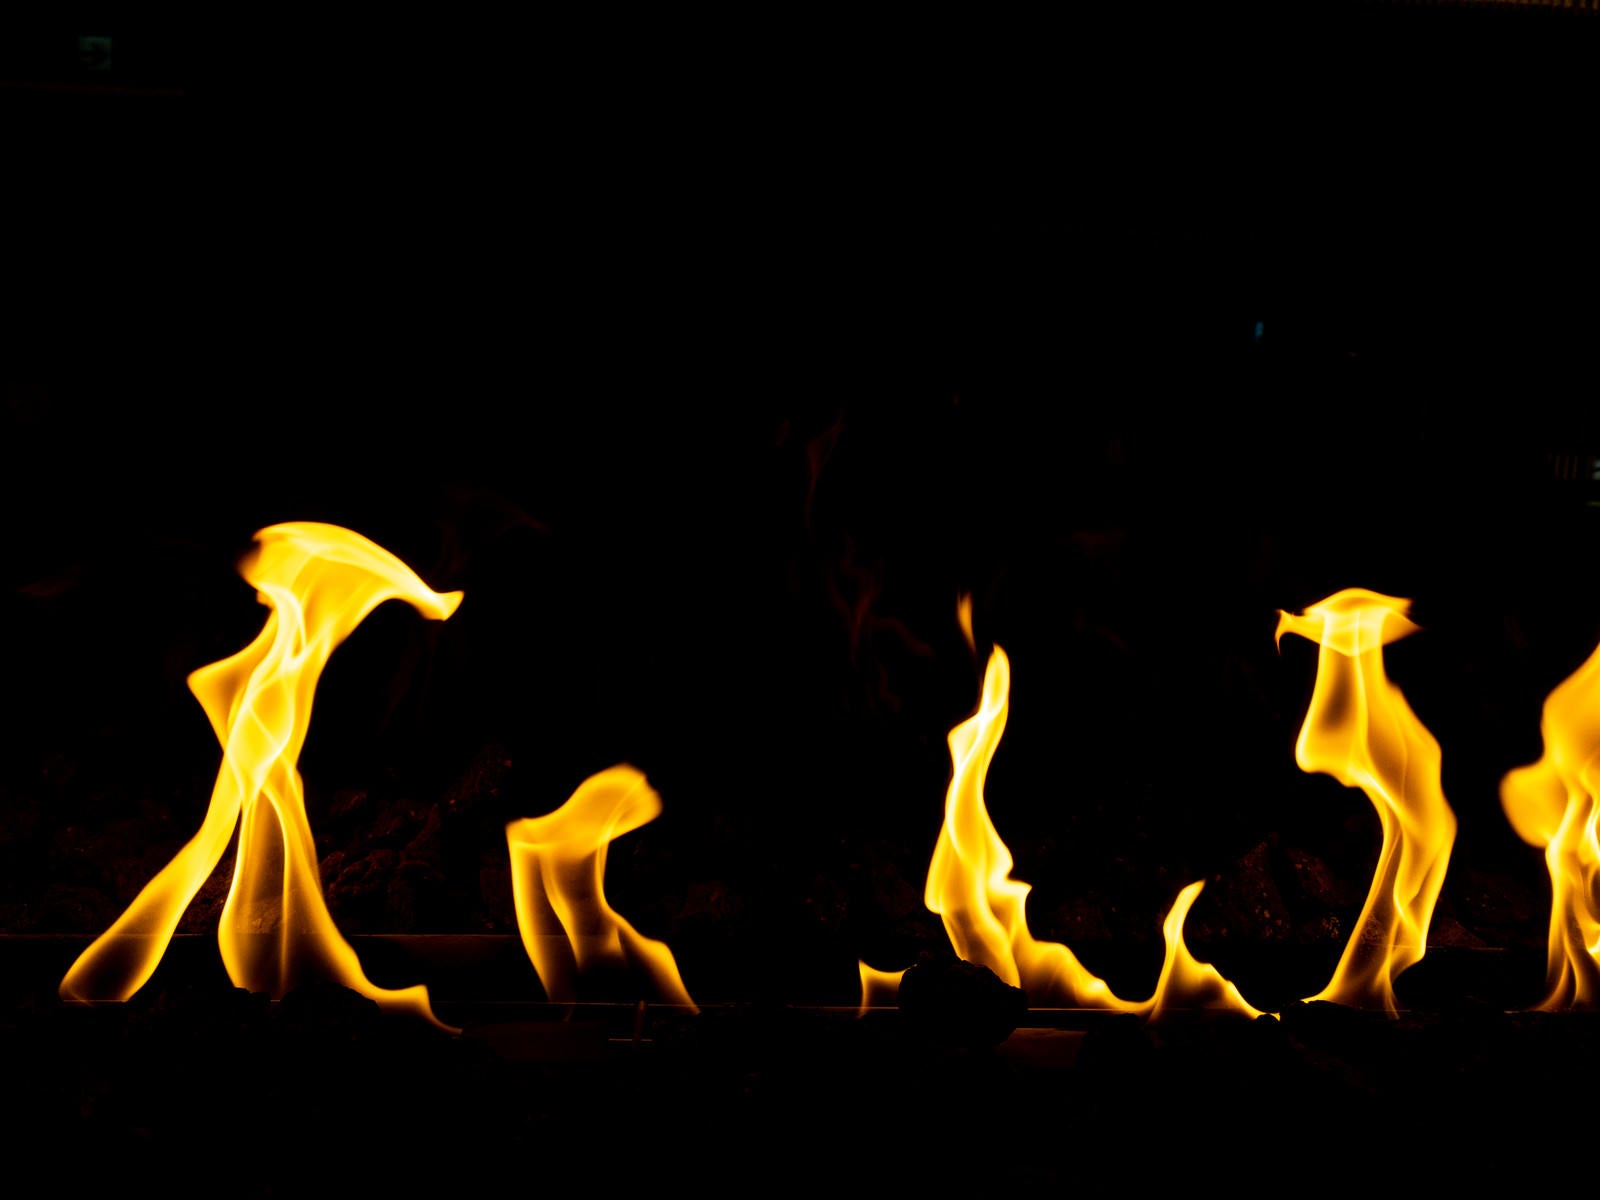 「燃え上がる暖炉内の炎」の写真